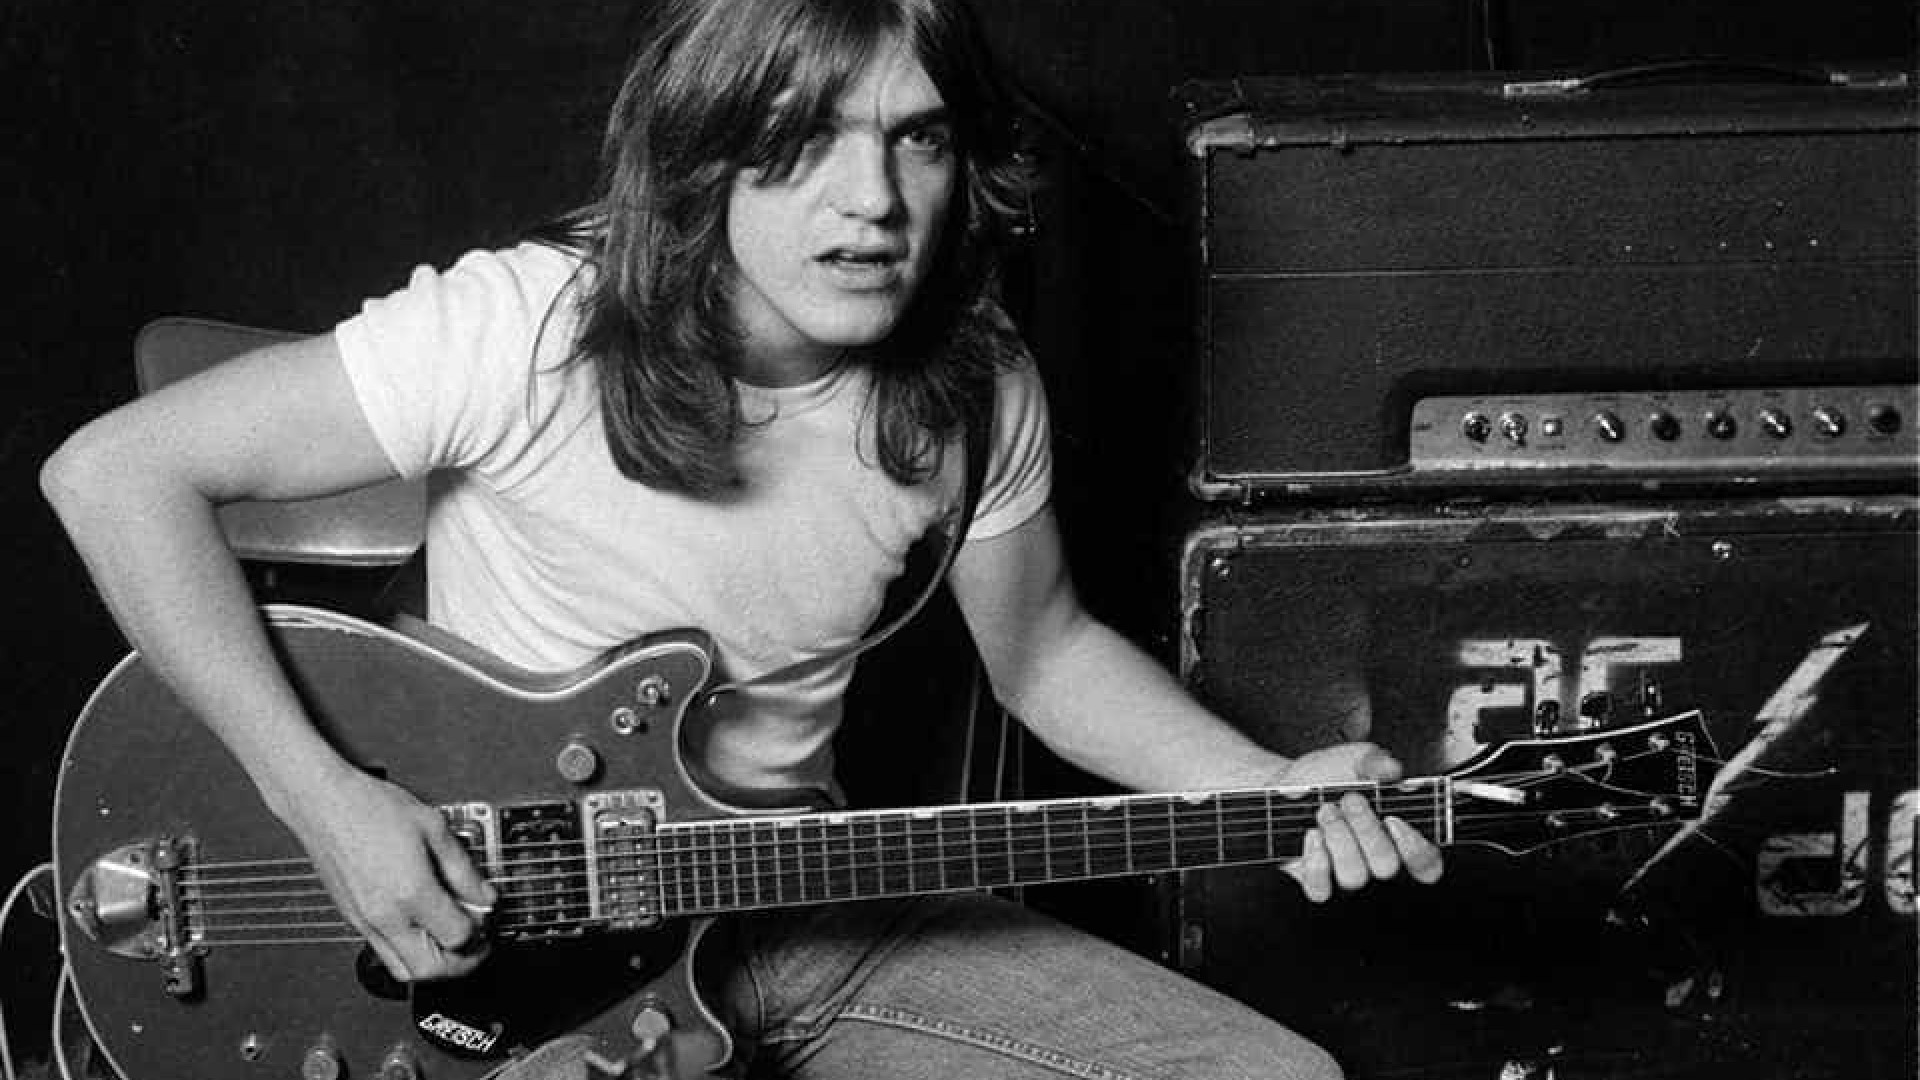 Morre guitarrista Malcolm Young, fundador do AC/DC